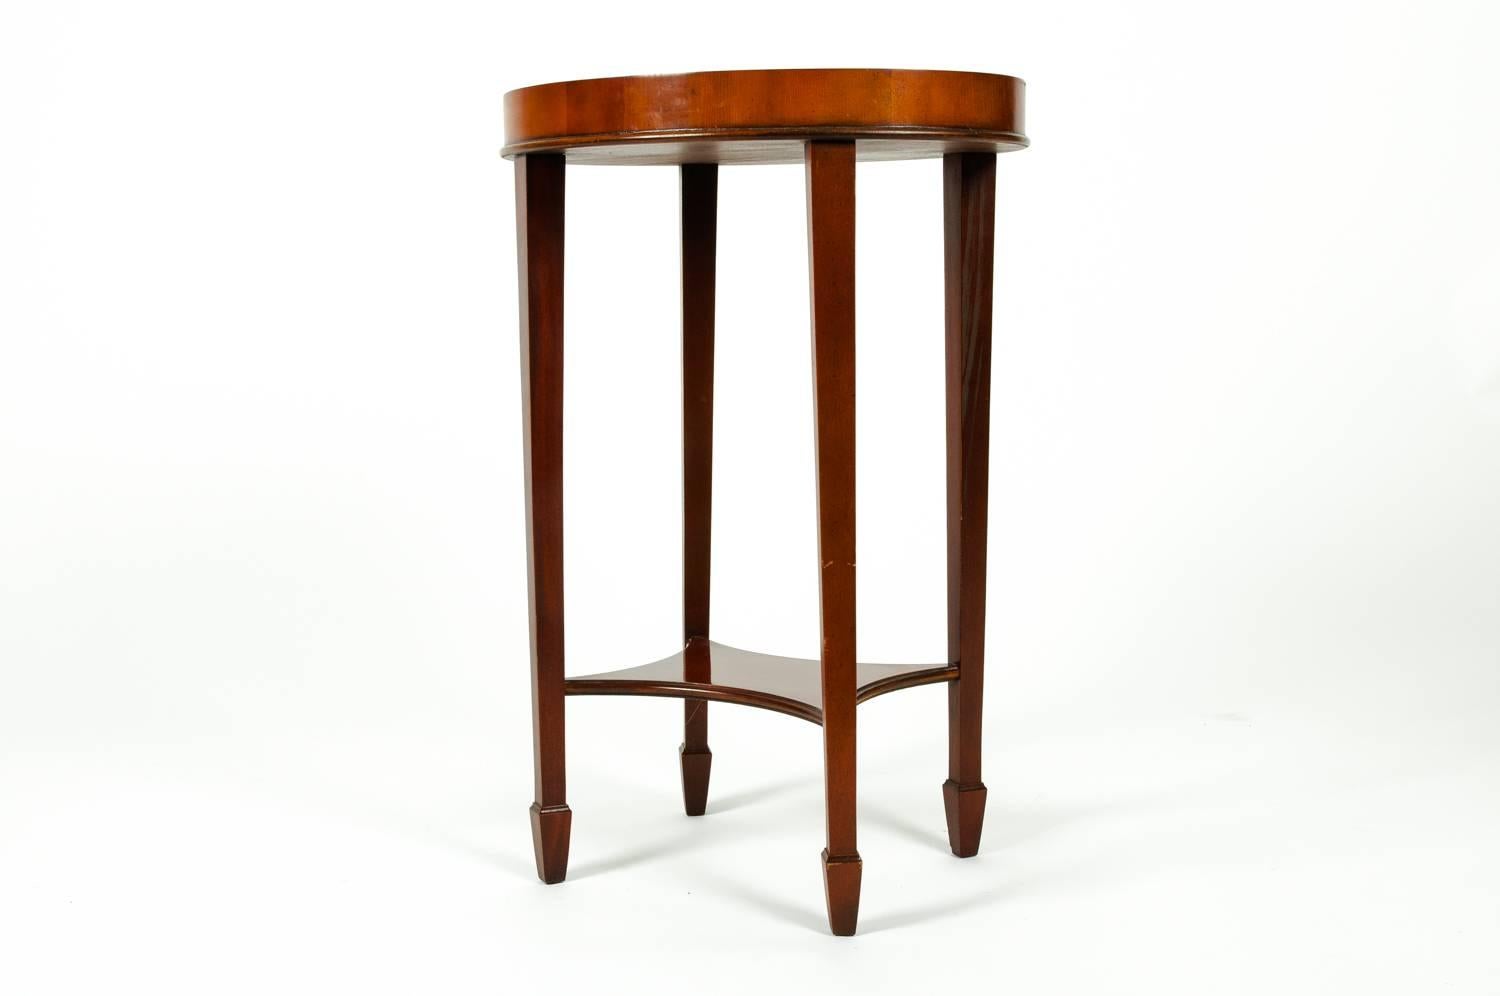 Inlay Early 20th Century Mahogany Wood Oval Table